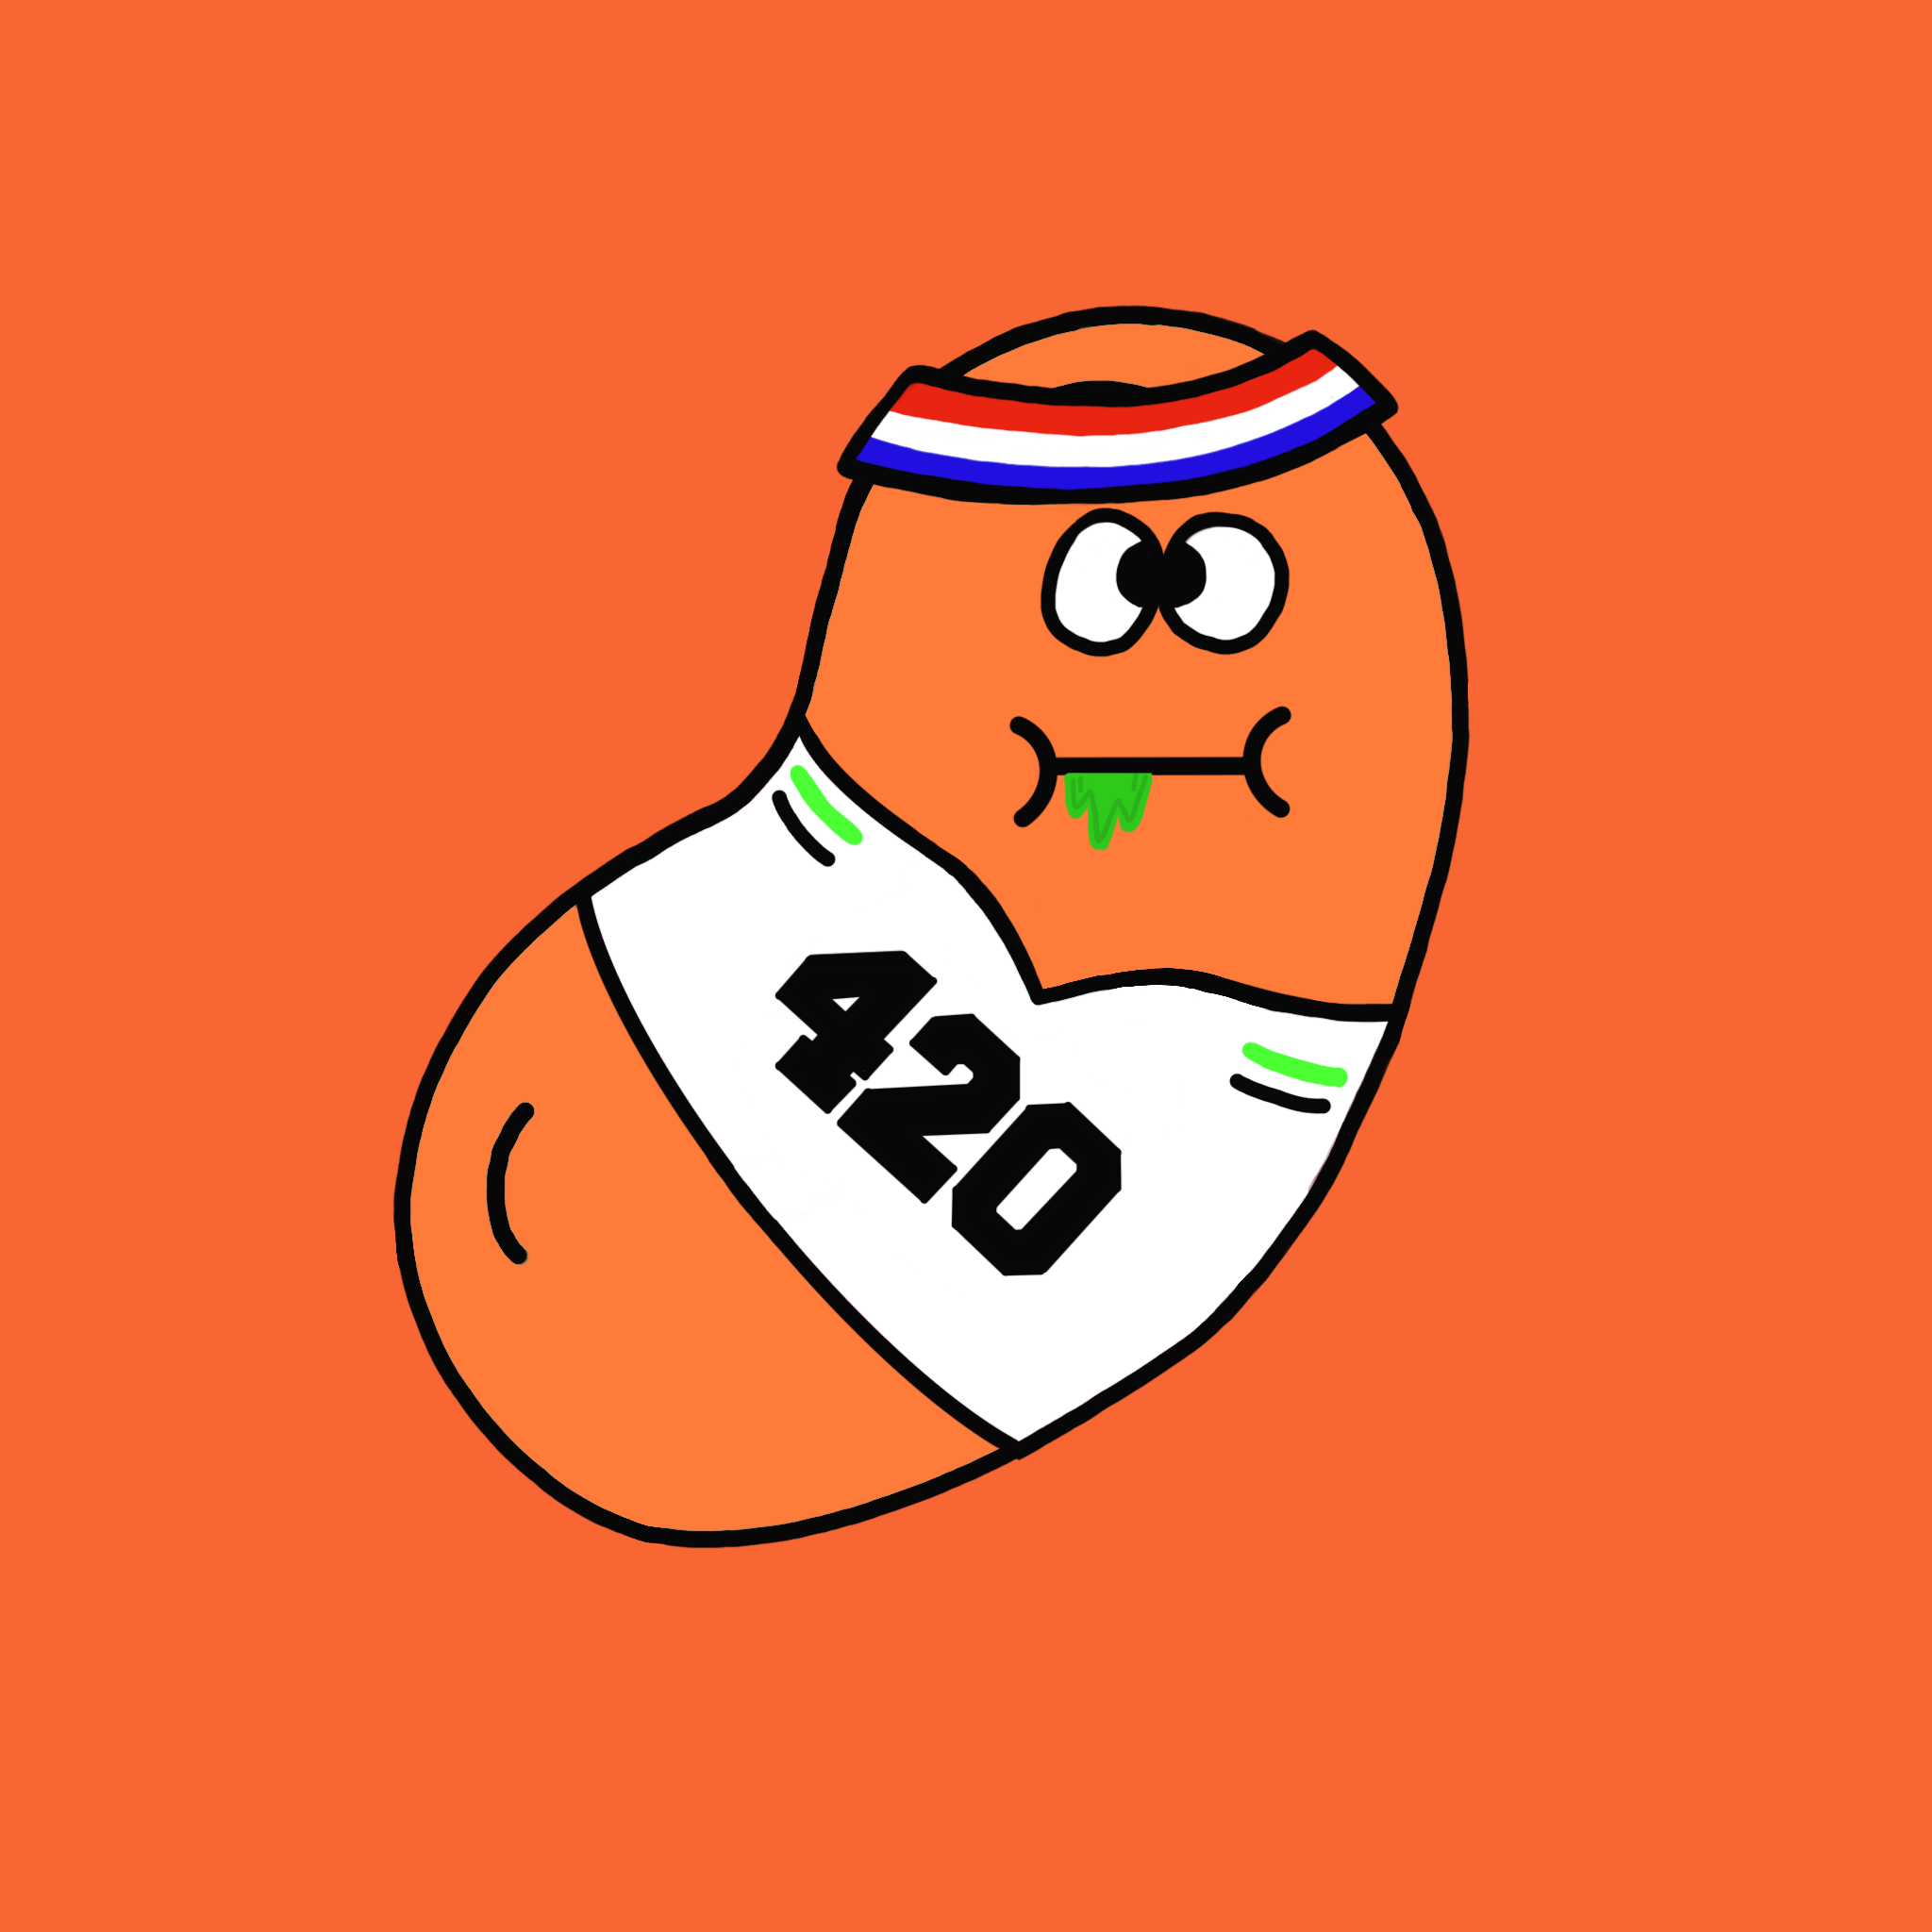 Bean #362